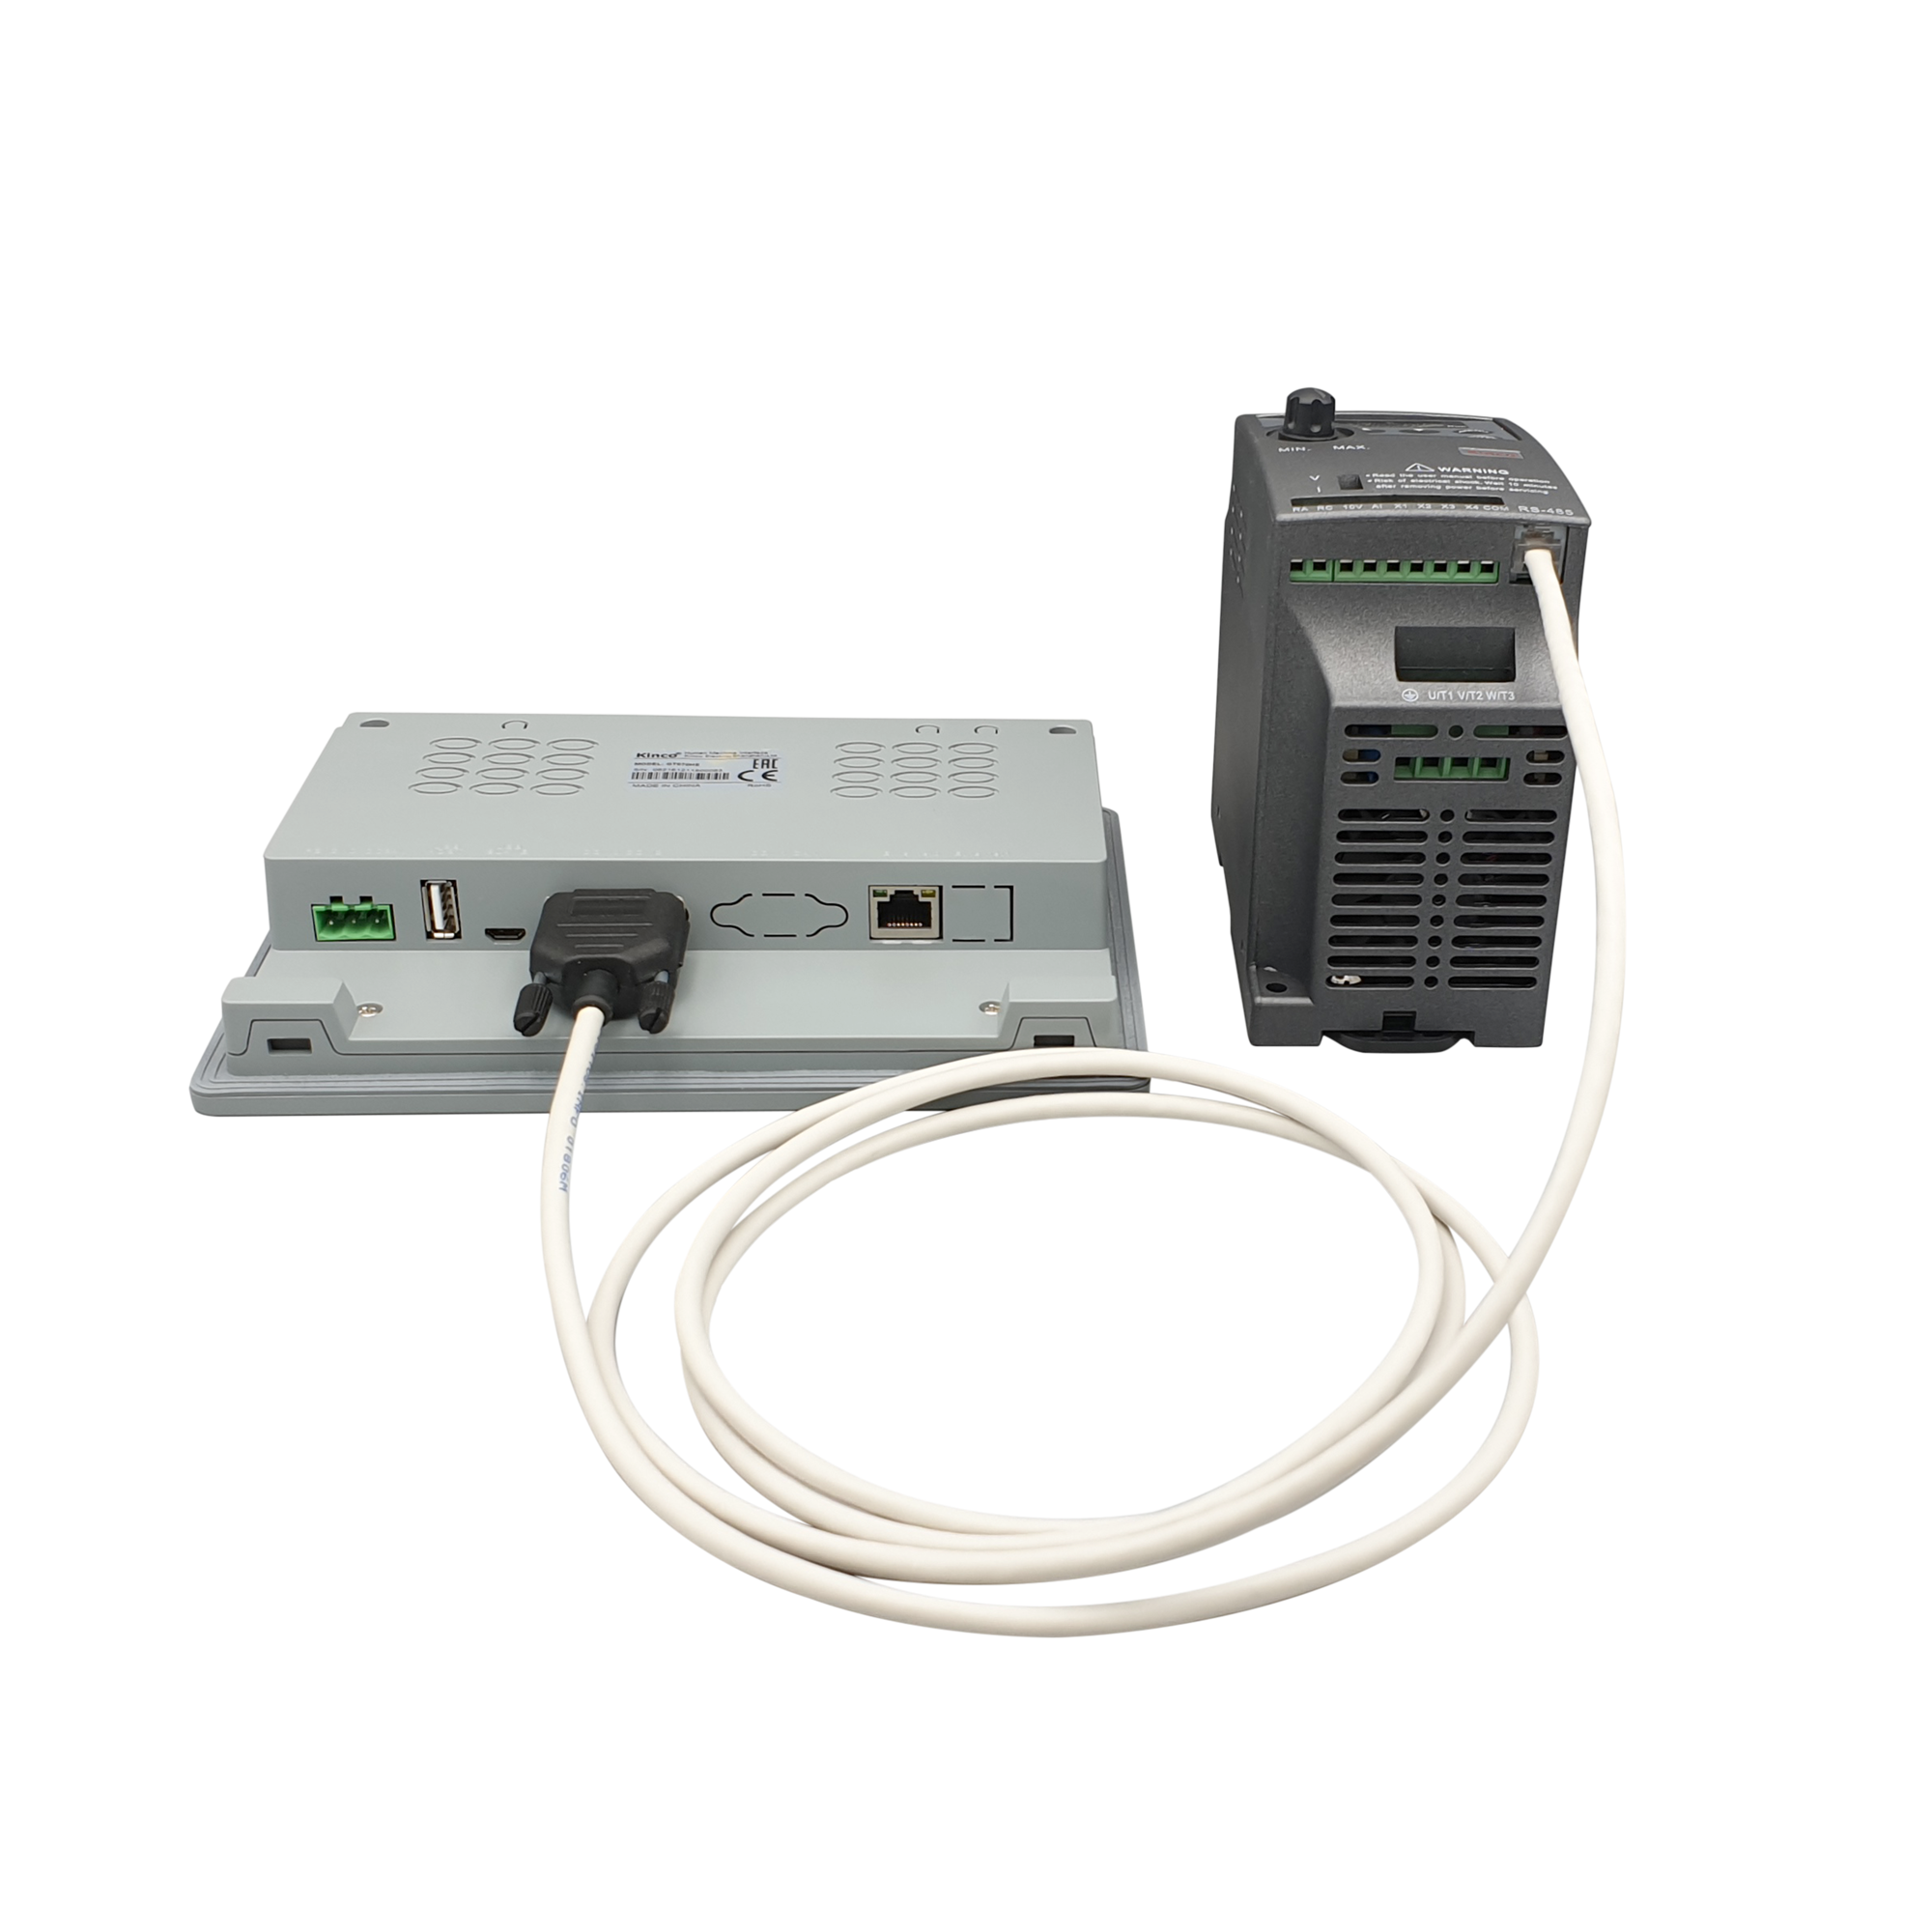 Serielles Verbindungskabel (RS-485) für Kinco CV20-Frequenzumrichter und Kinco HMI